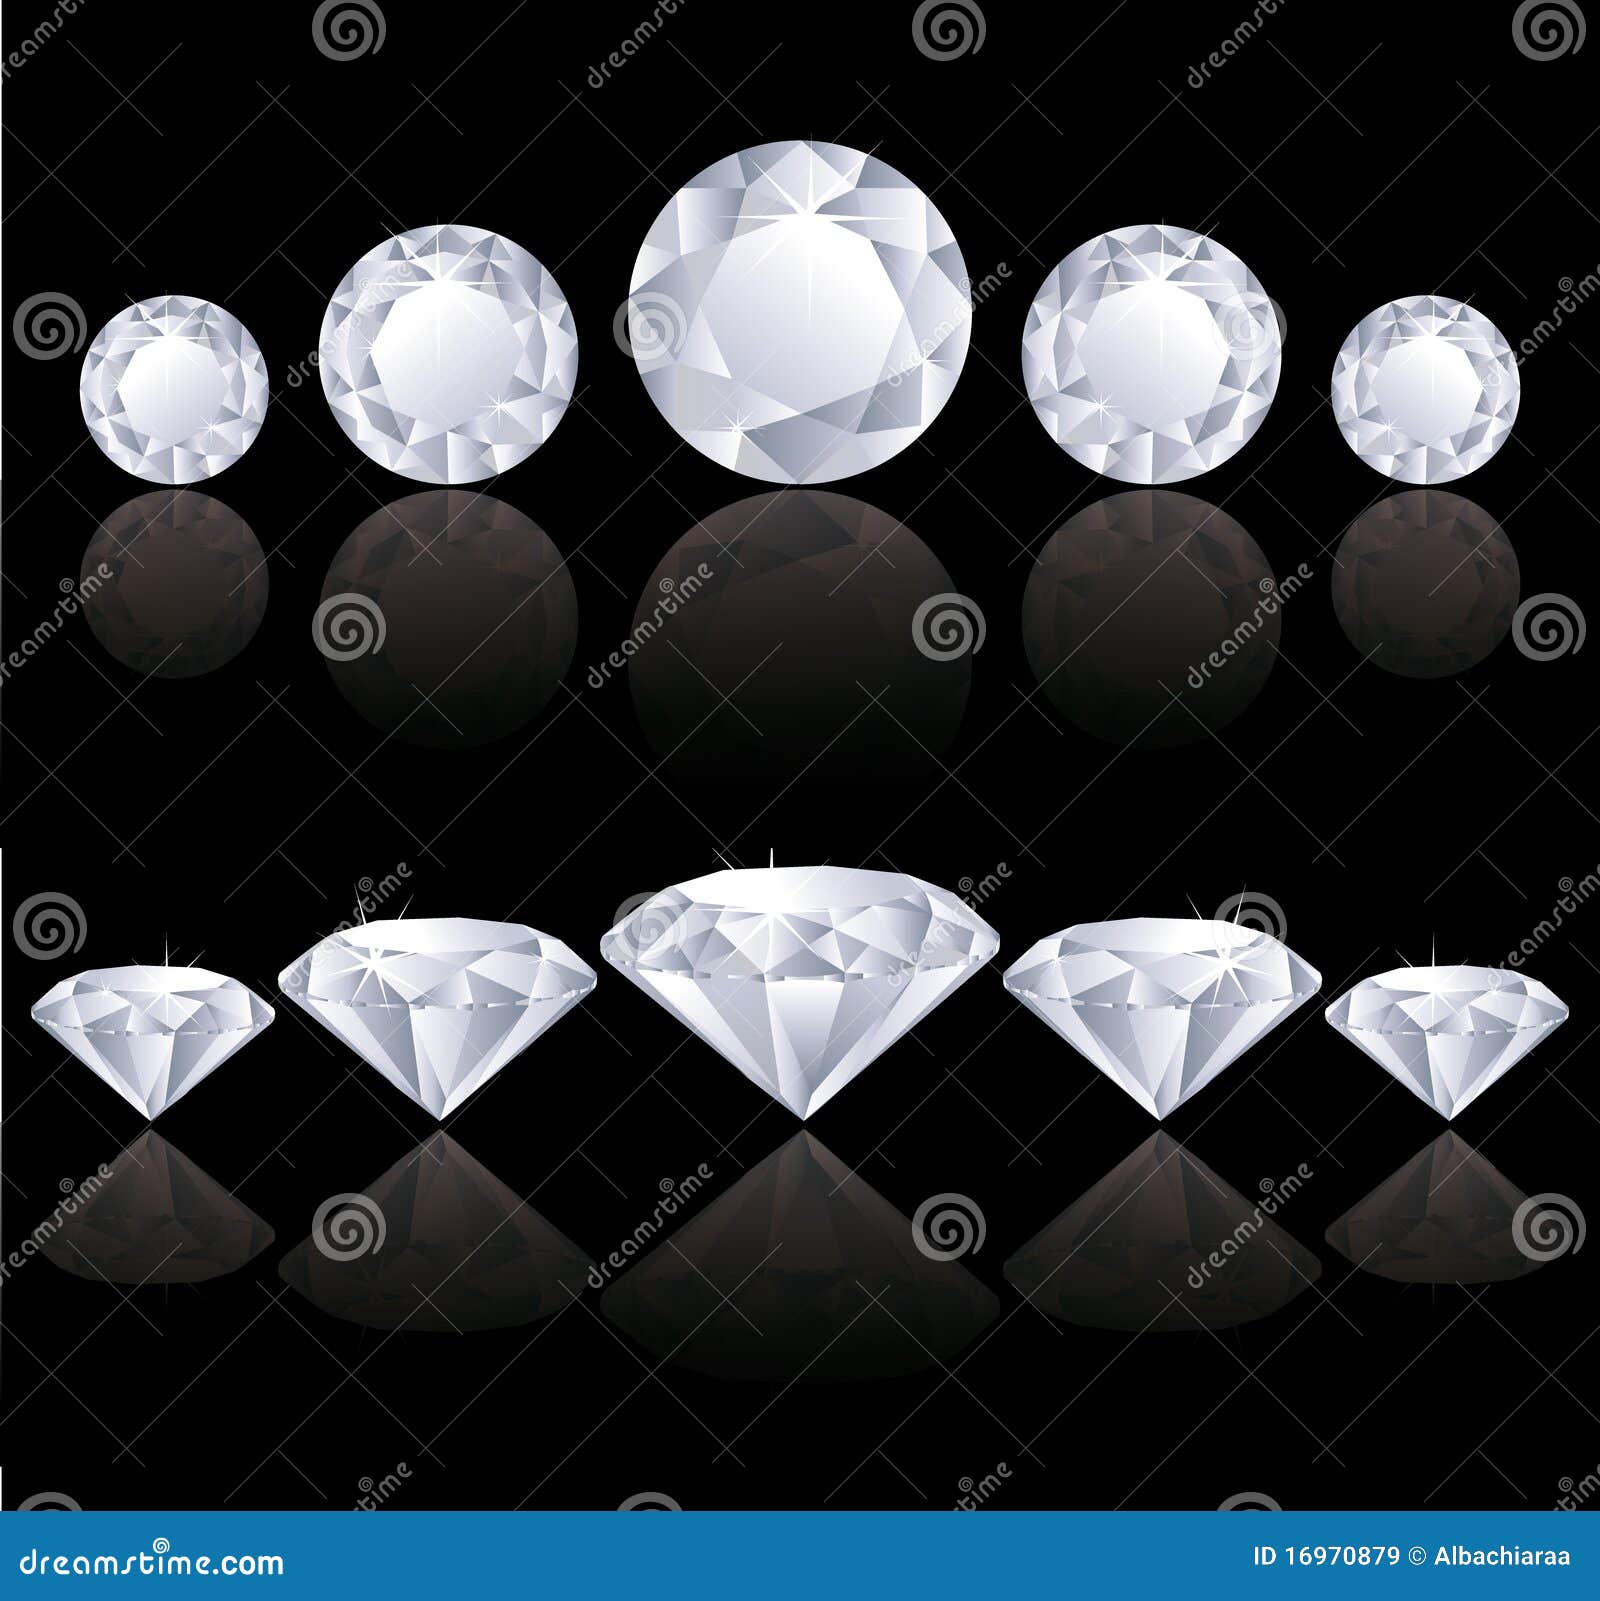 diamonds rows